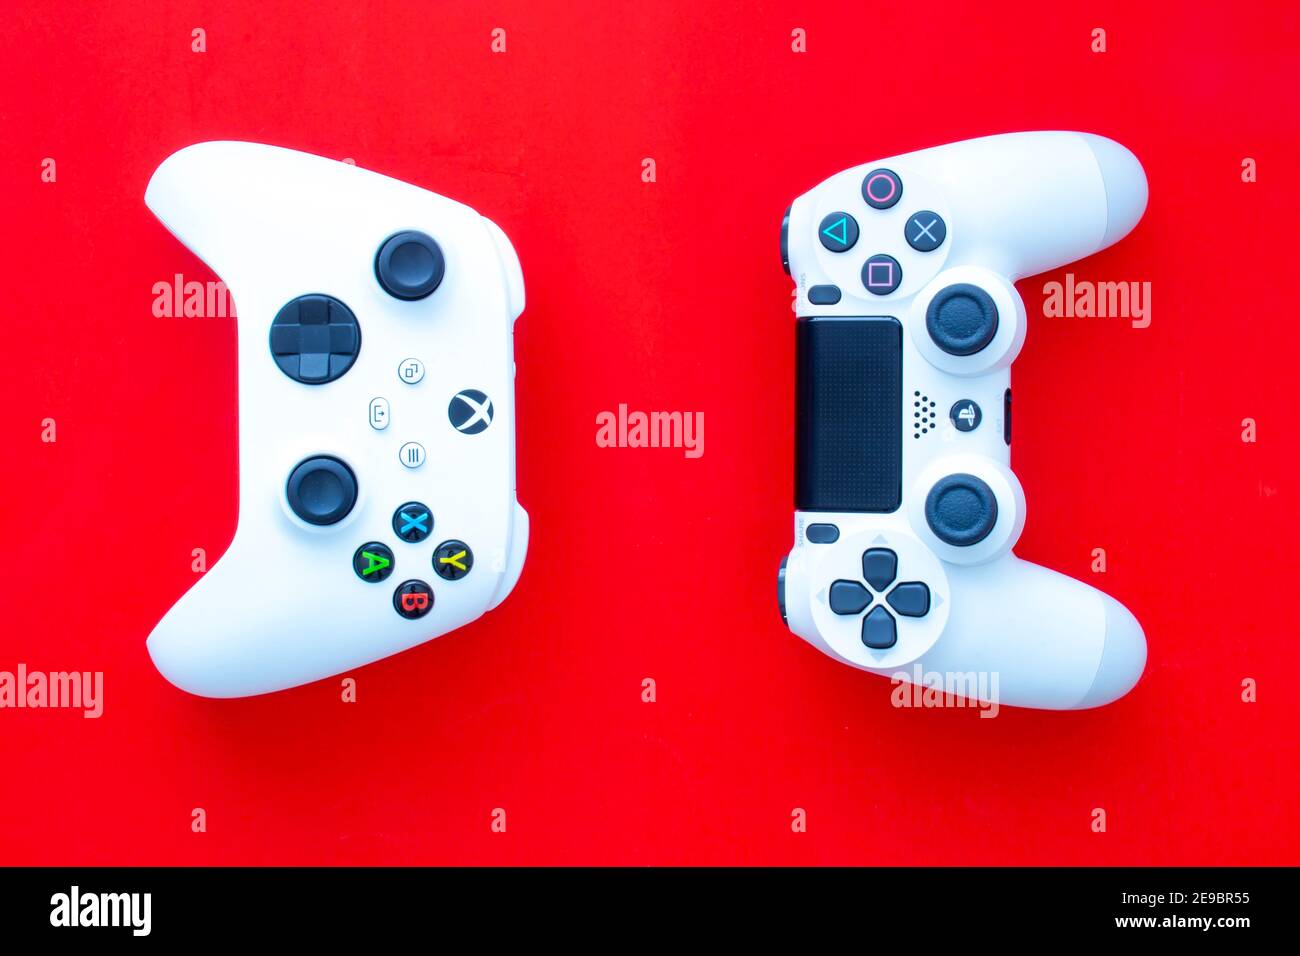 Playstation 3 console immagini e fotografie stock ad alta risoluzione -  Alamy